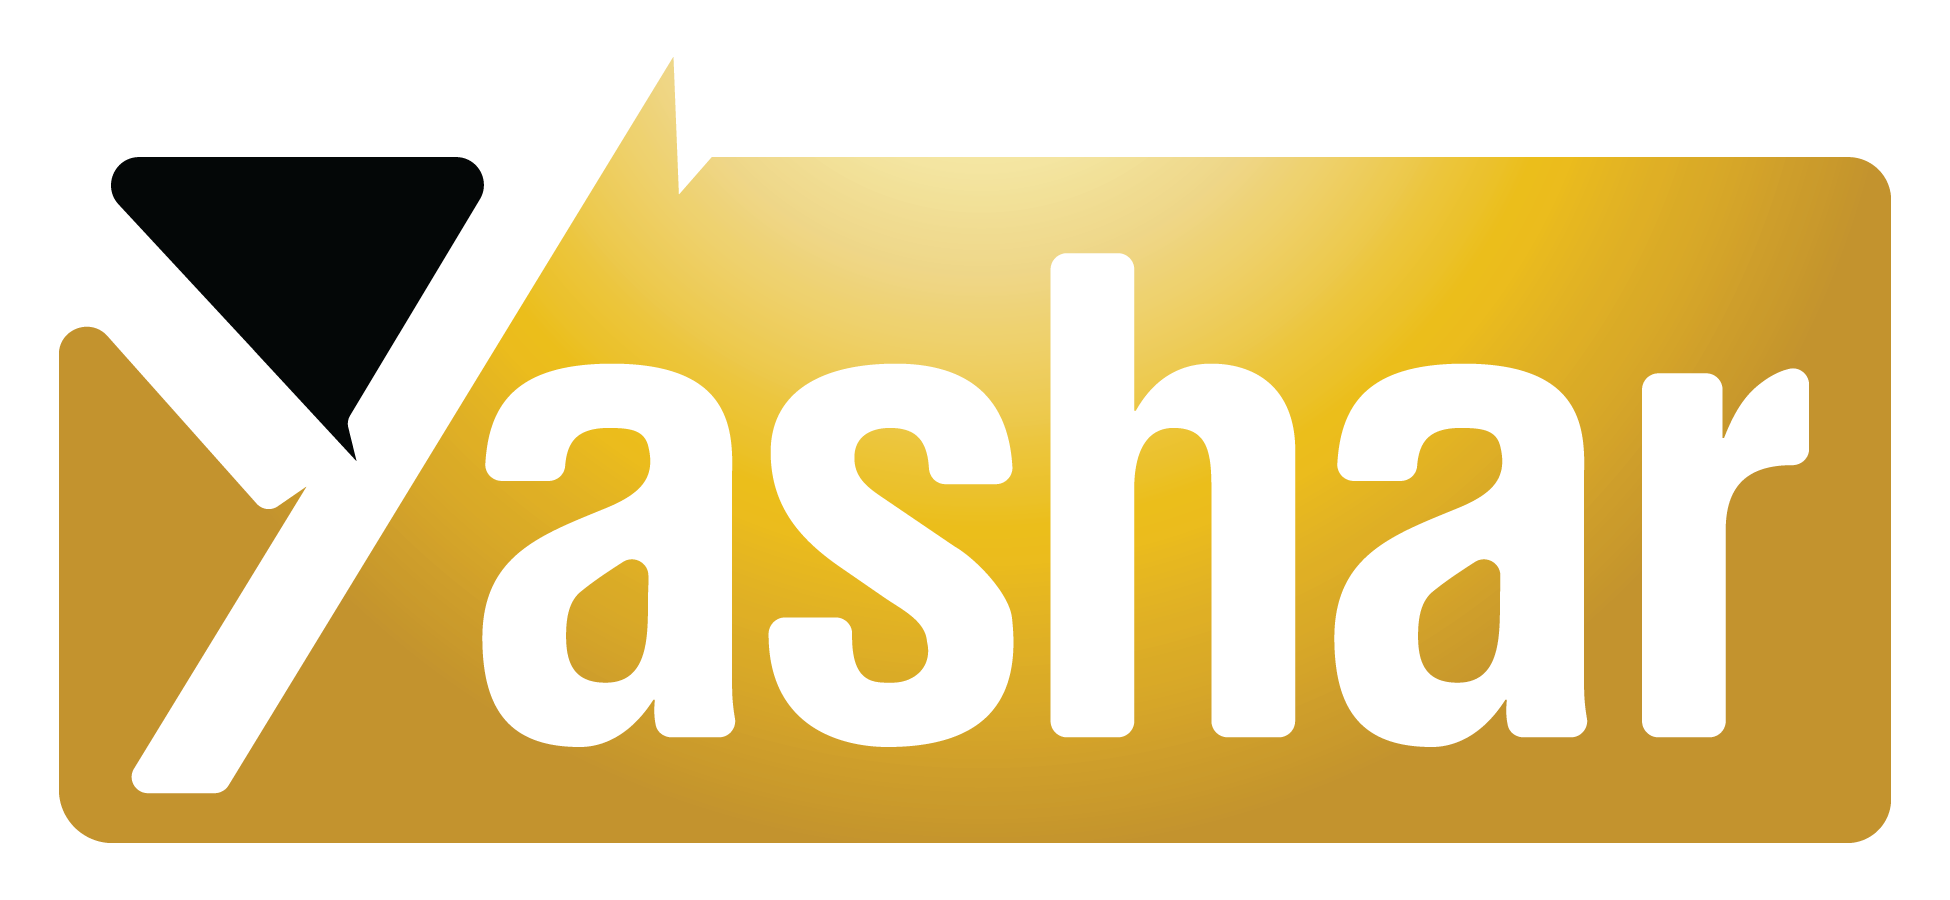 Yashar logo